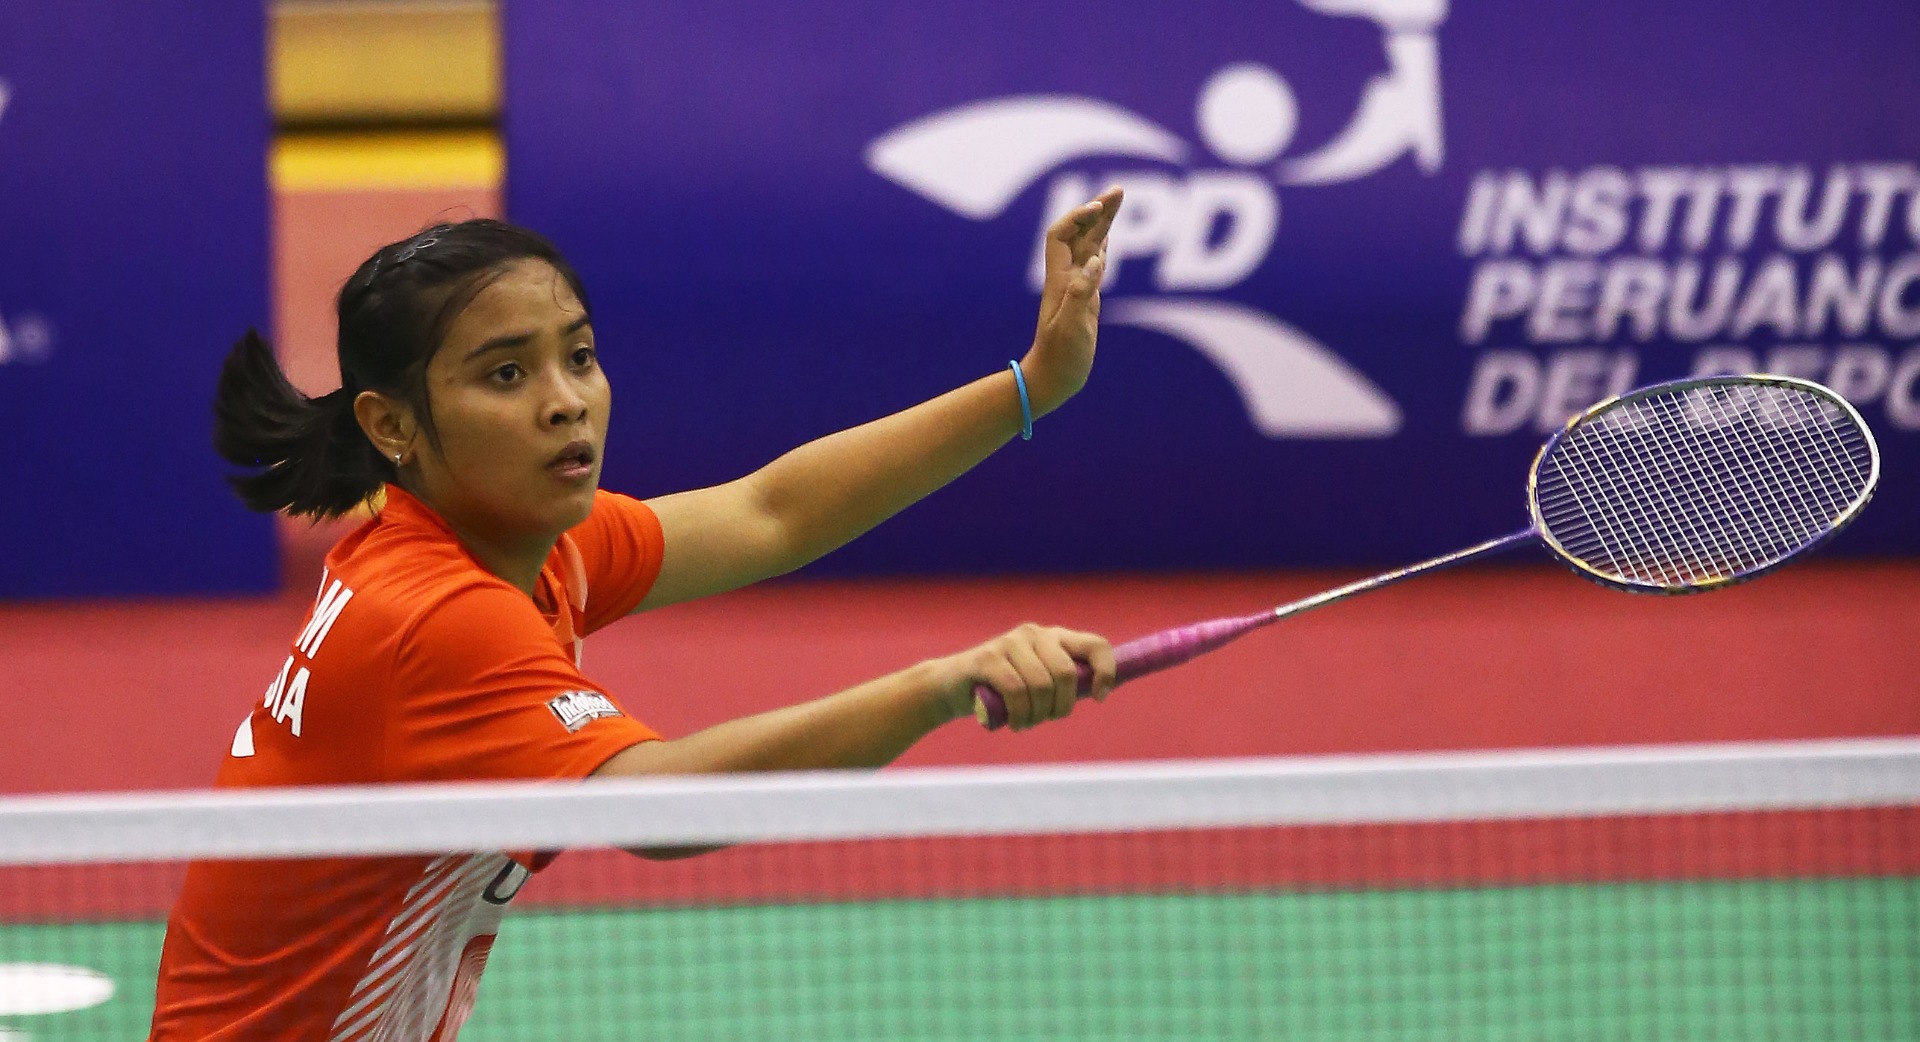 Ini Pebulutangkis Indonesia Di Kejuaraan Dunia Junior 2017